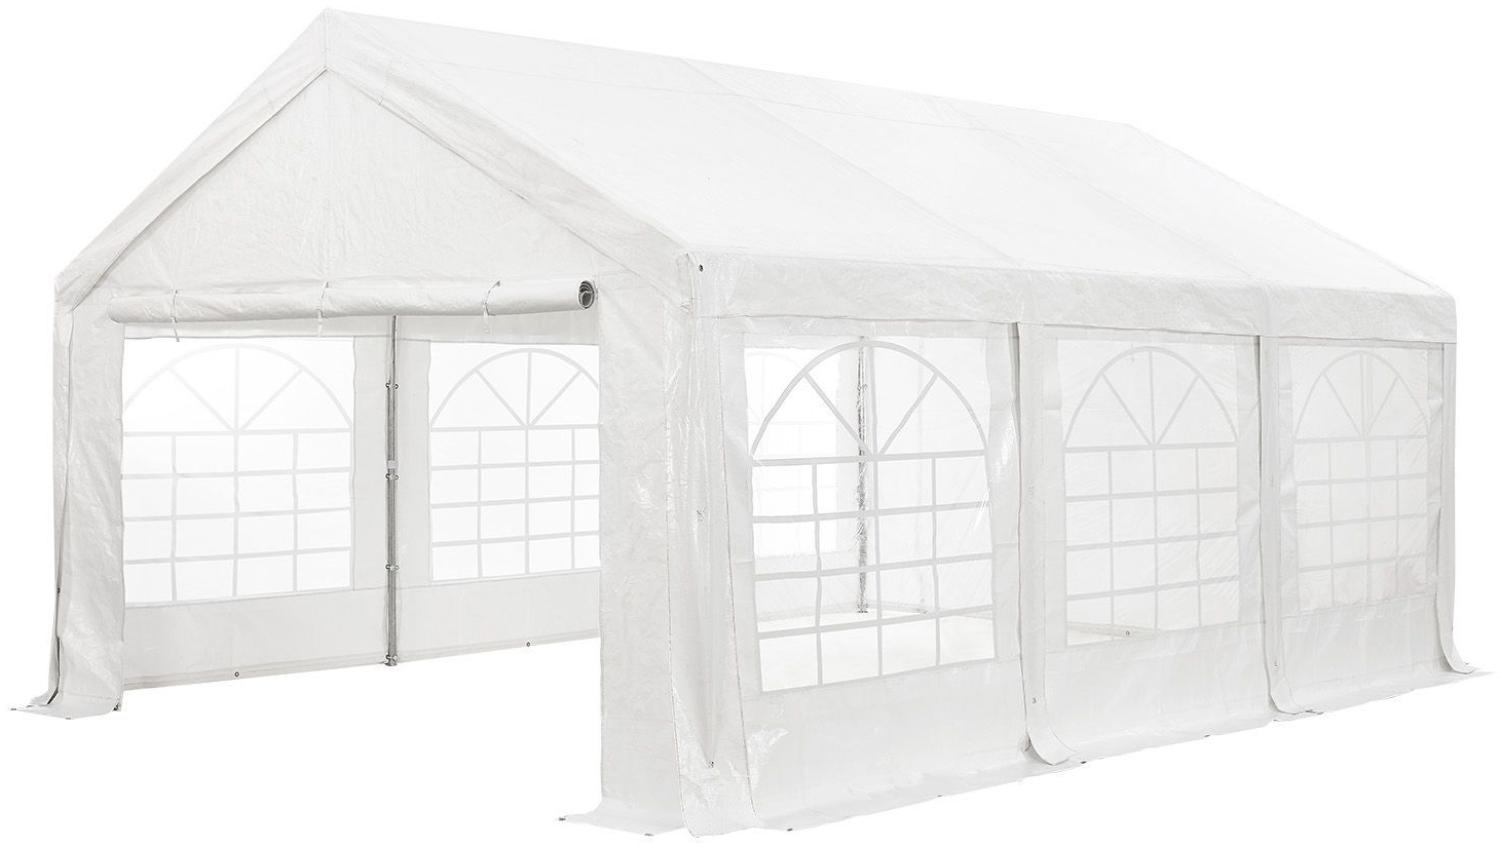 Juskys Partyzelt Gala 4 x 6 m - UV-Schutz Plane, flexible Seitenwände - Pavillon stabil, groß - Outdoor Party Garten - Zelt Festzelt Weiß Bild 1